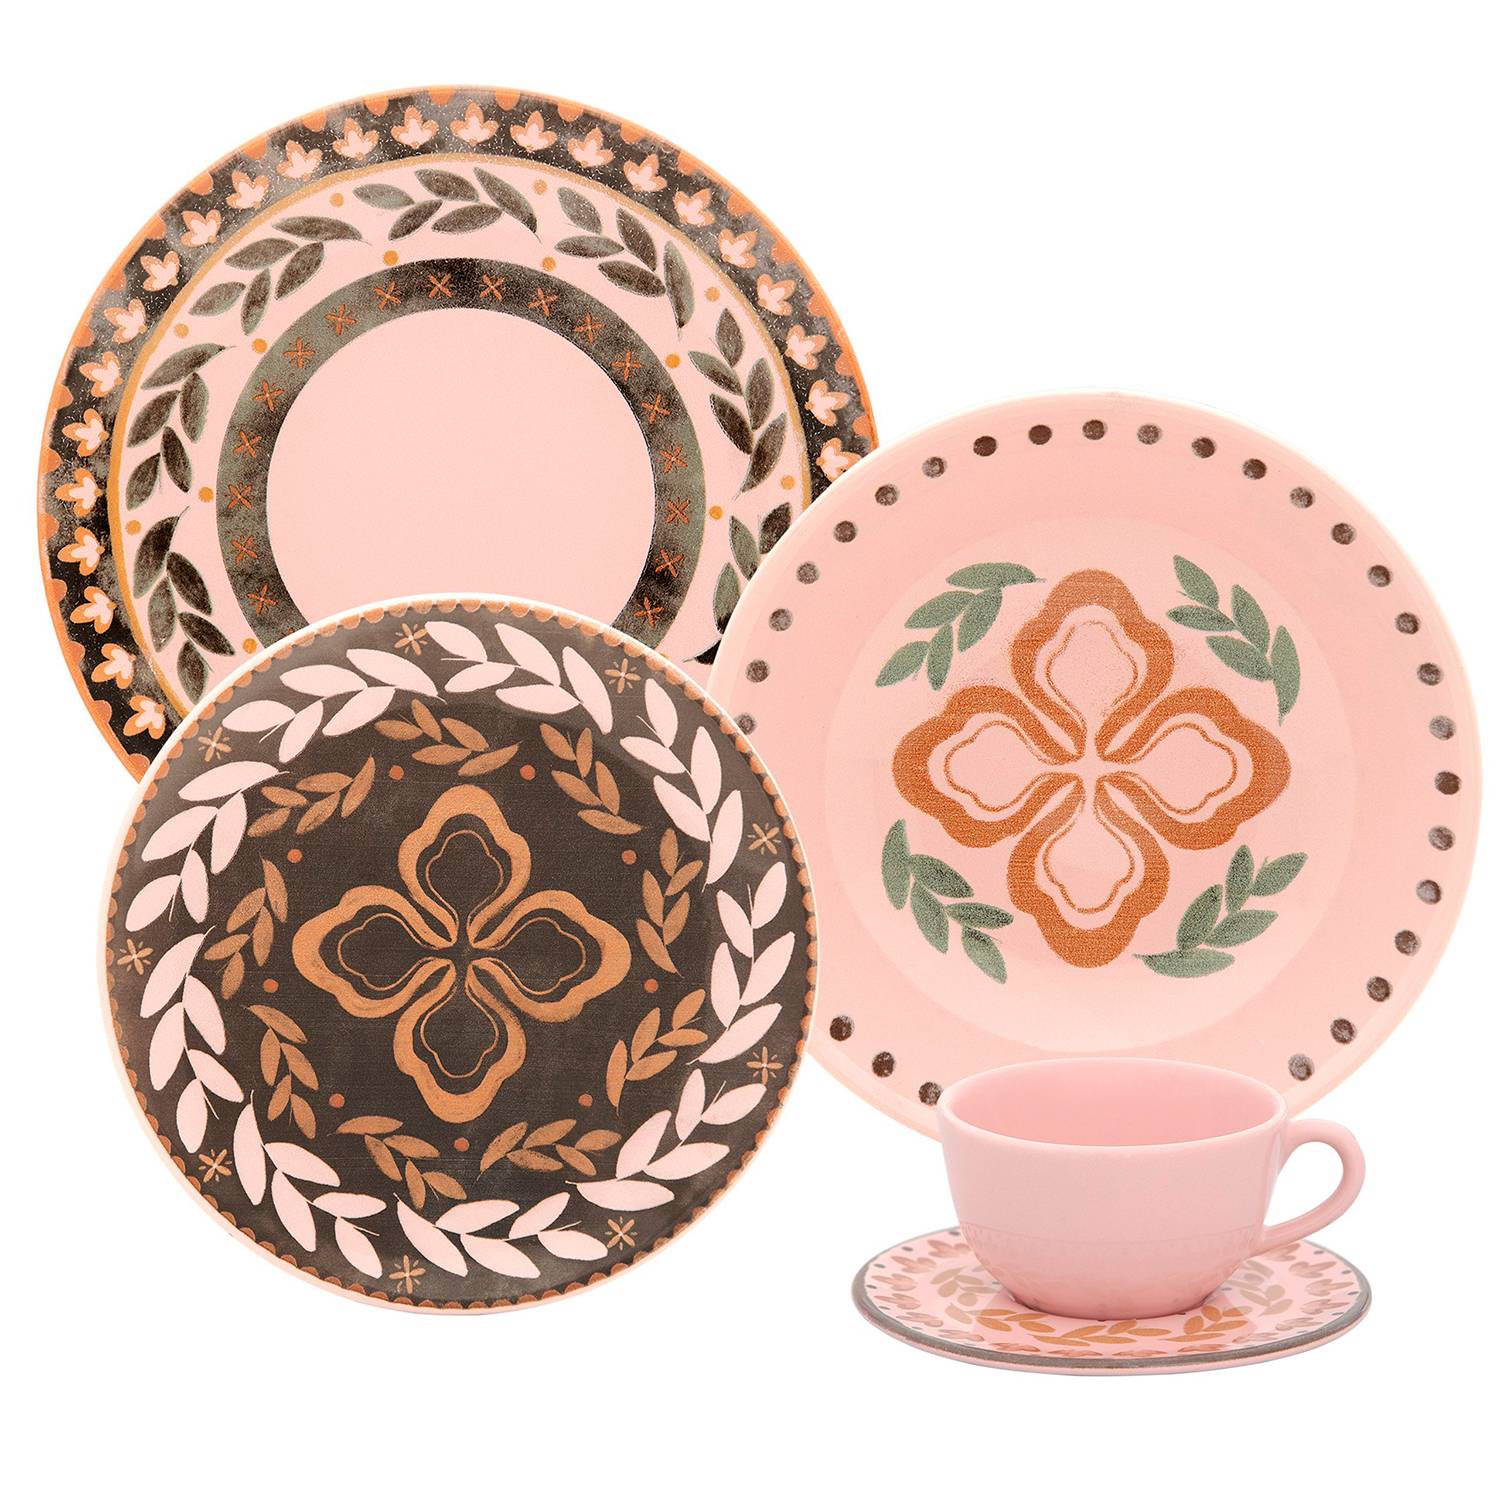 CXDTBH – Juego completo de vajilla de cerámica floral para